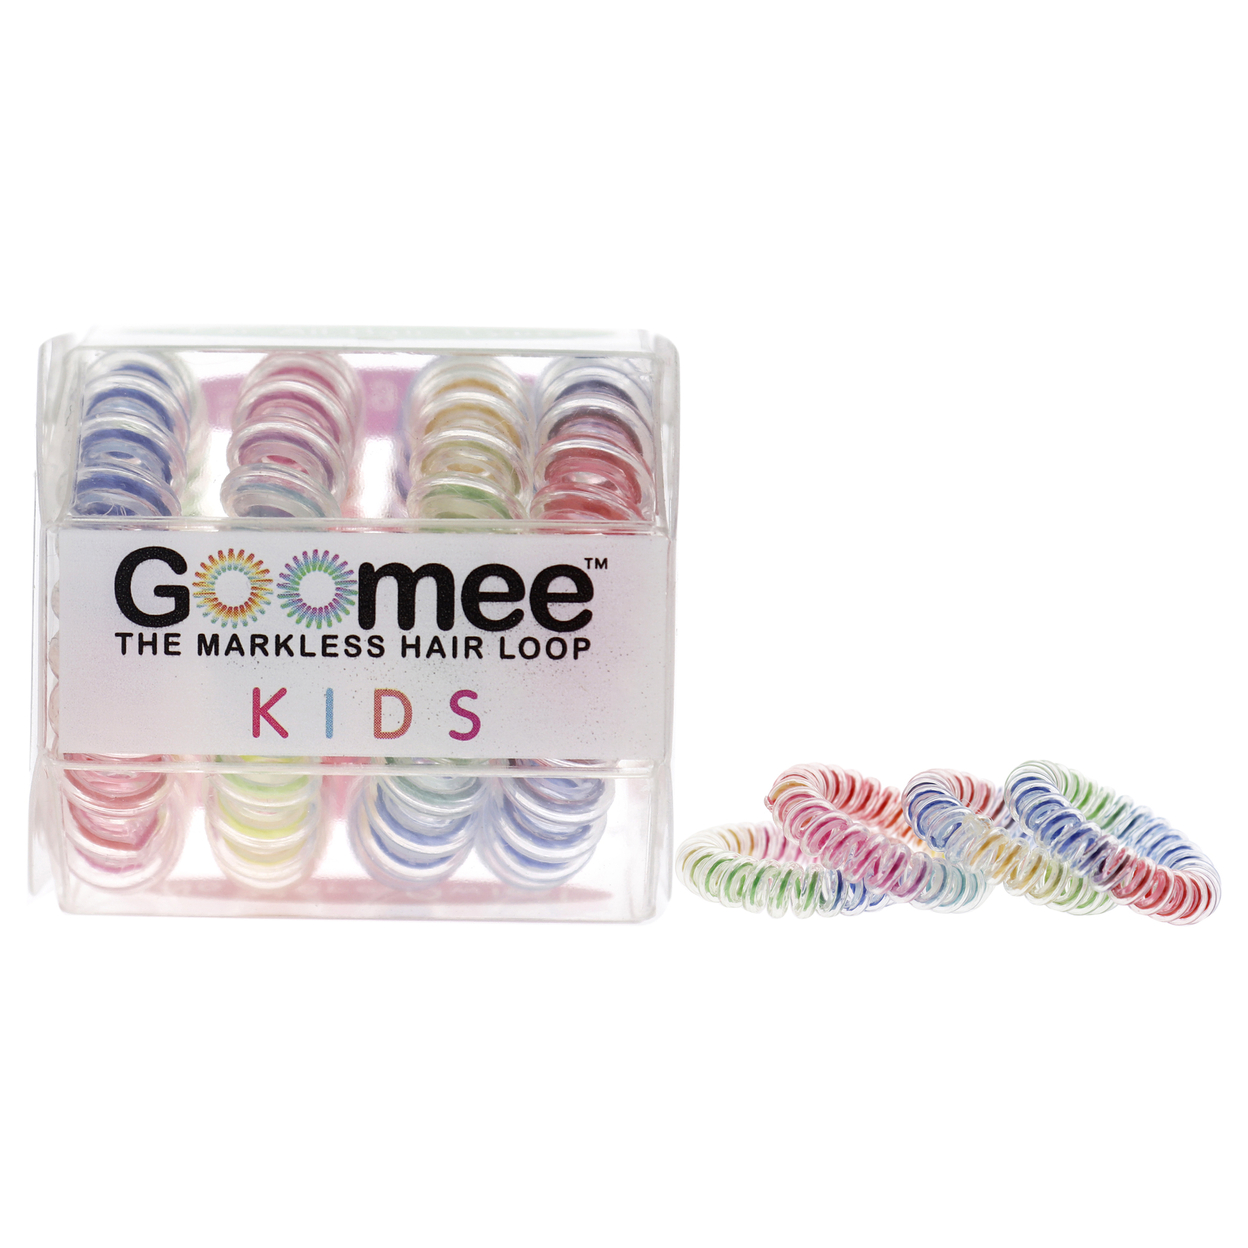 Goomee Kids The Markless Hair Loop Set - My Little Mermaid Hair Tie 4 Pc